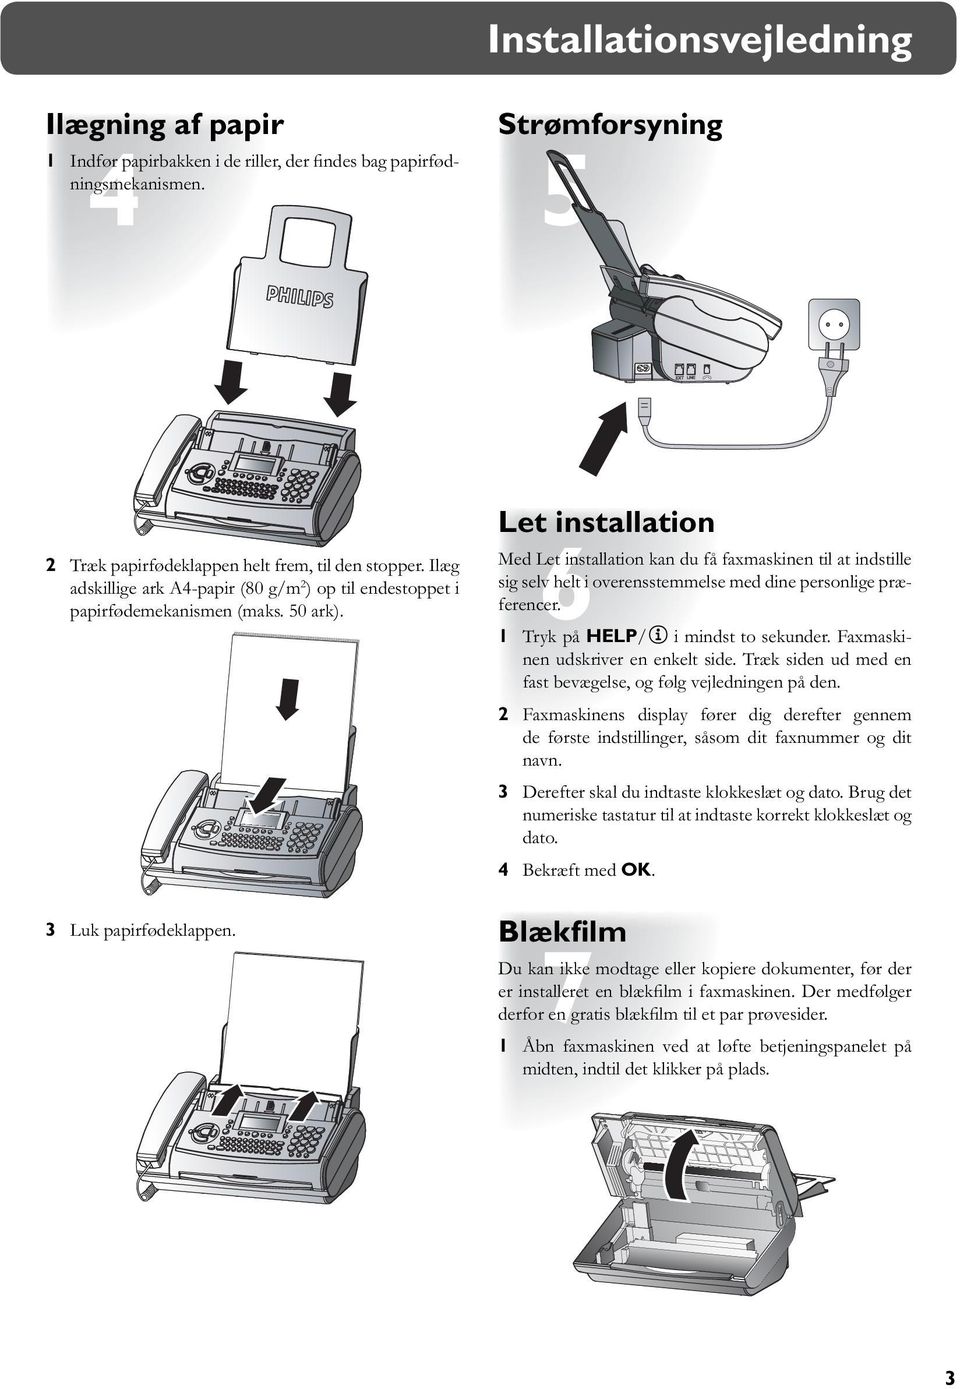 Let installation Med Let installation kan du få faxmaskinen til at indstille sig selv helt i overensstemmelse med dine personlige præferencer. 1 Tryk på HELP/w i mindst to sekunder.